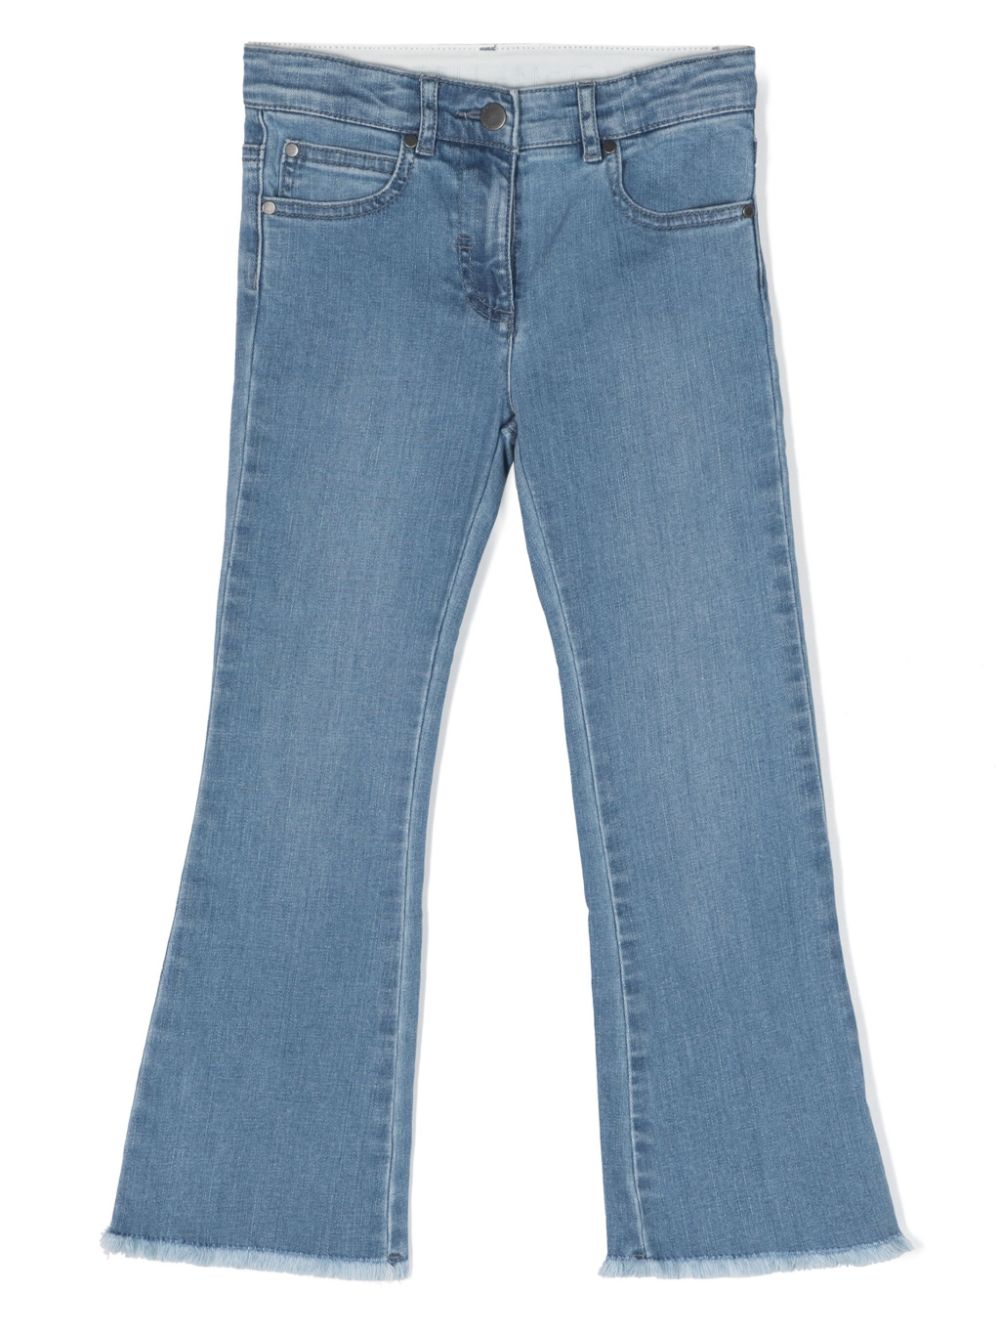 Stella McCartney Kids jeans svasato